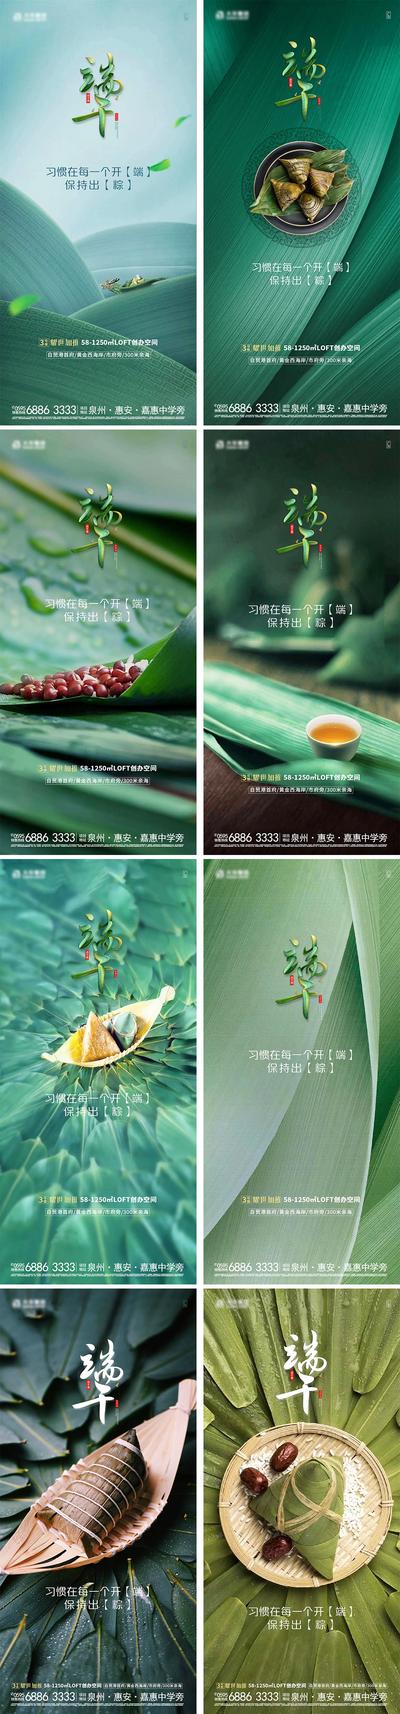 南门网 海报 房地产 中国传统节日 端午节 粽子 龙舟